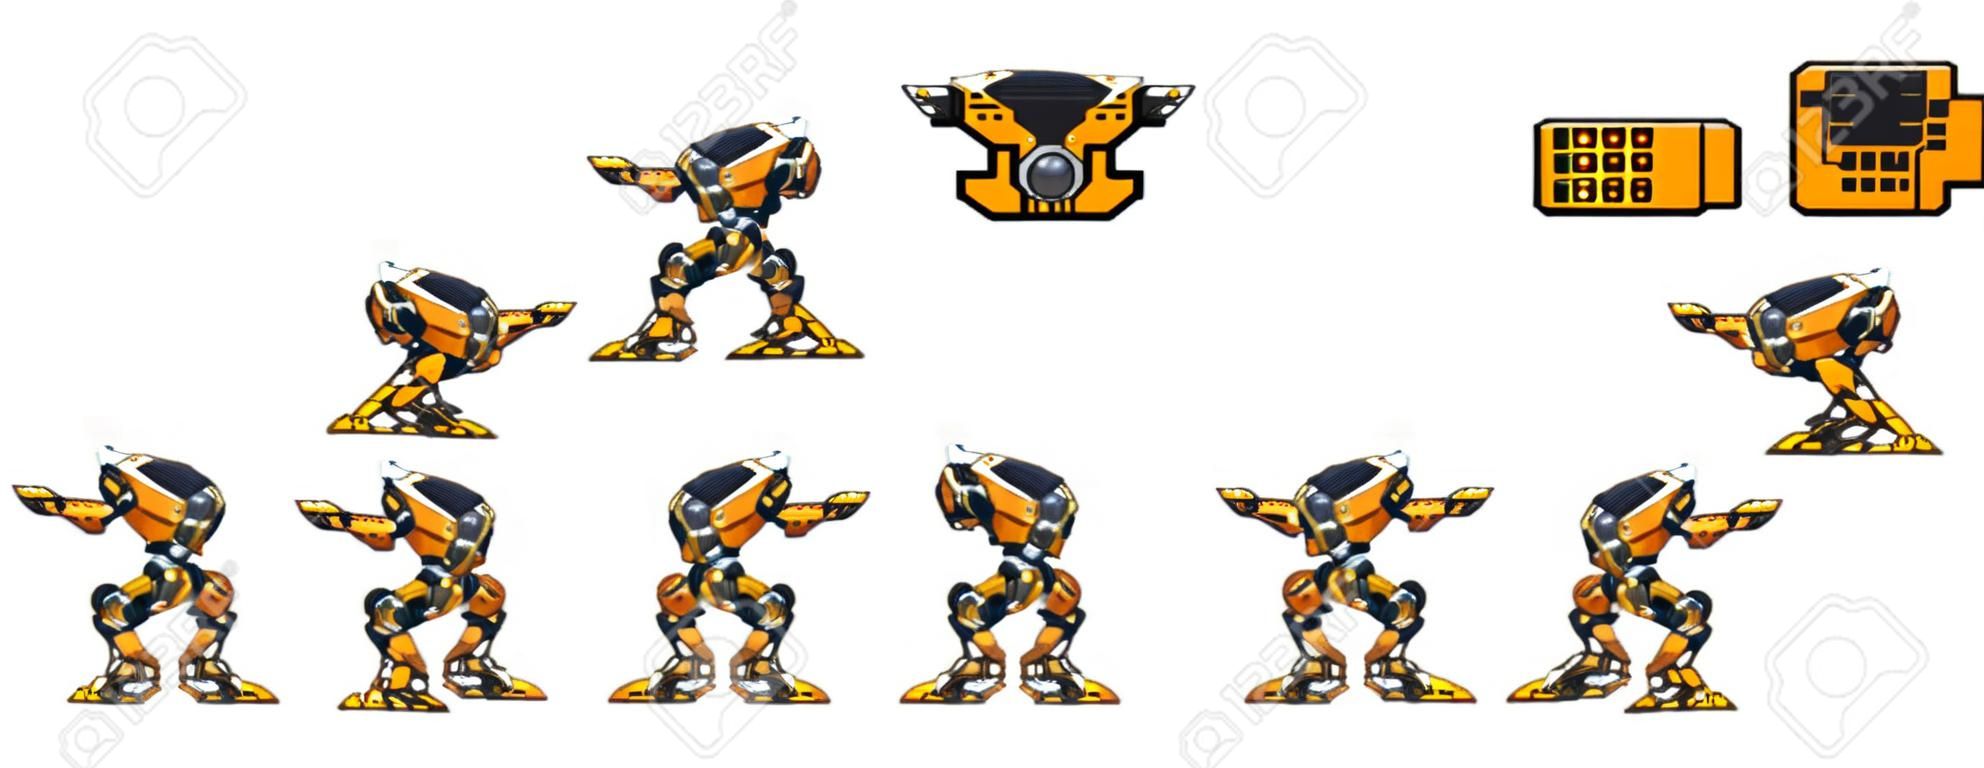 Sprites de personajes de juegos de robots enemigos animados